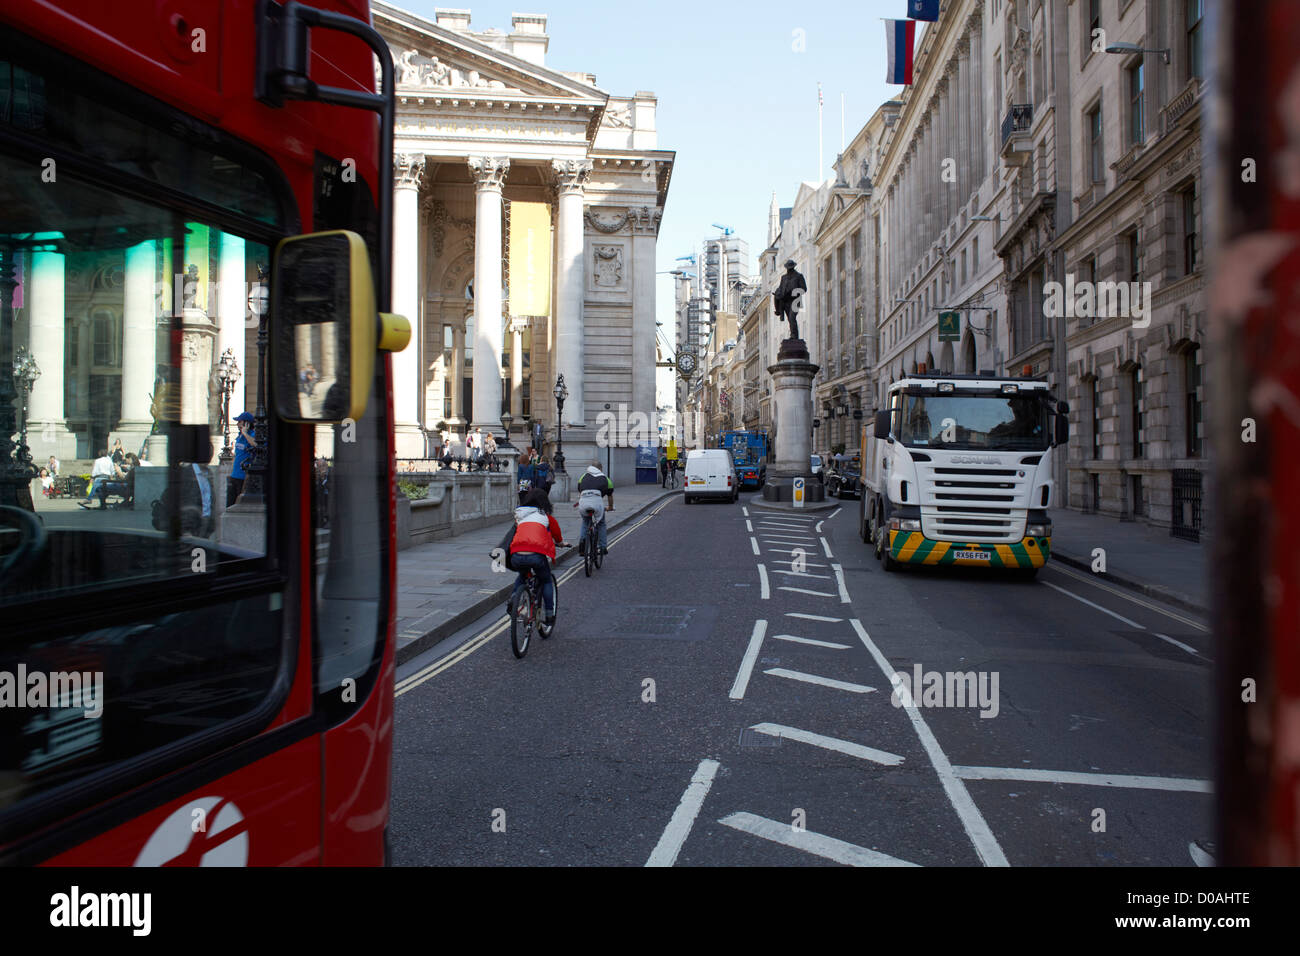 Les bus et la circulation intense dans la rue étroite, Cornhill, City of London Banque D'Images